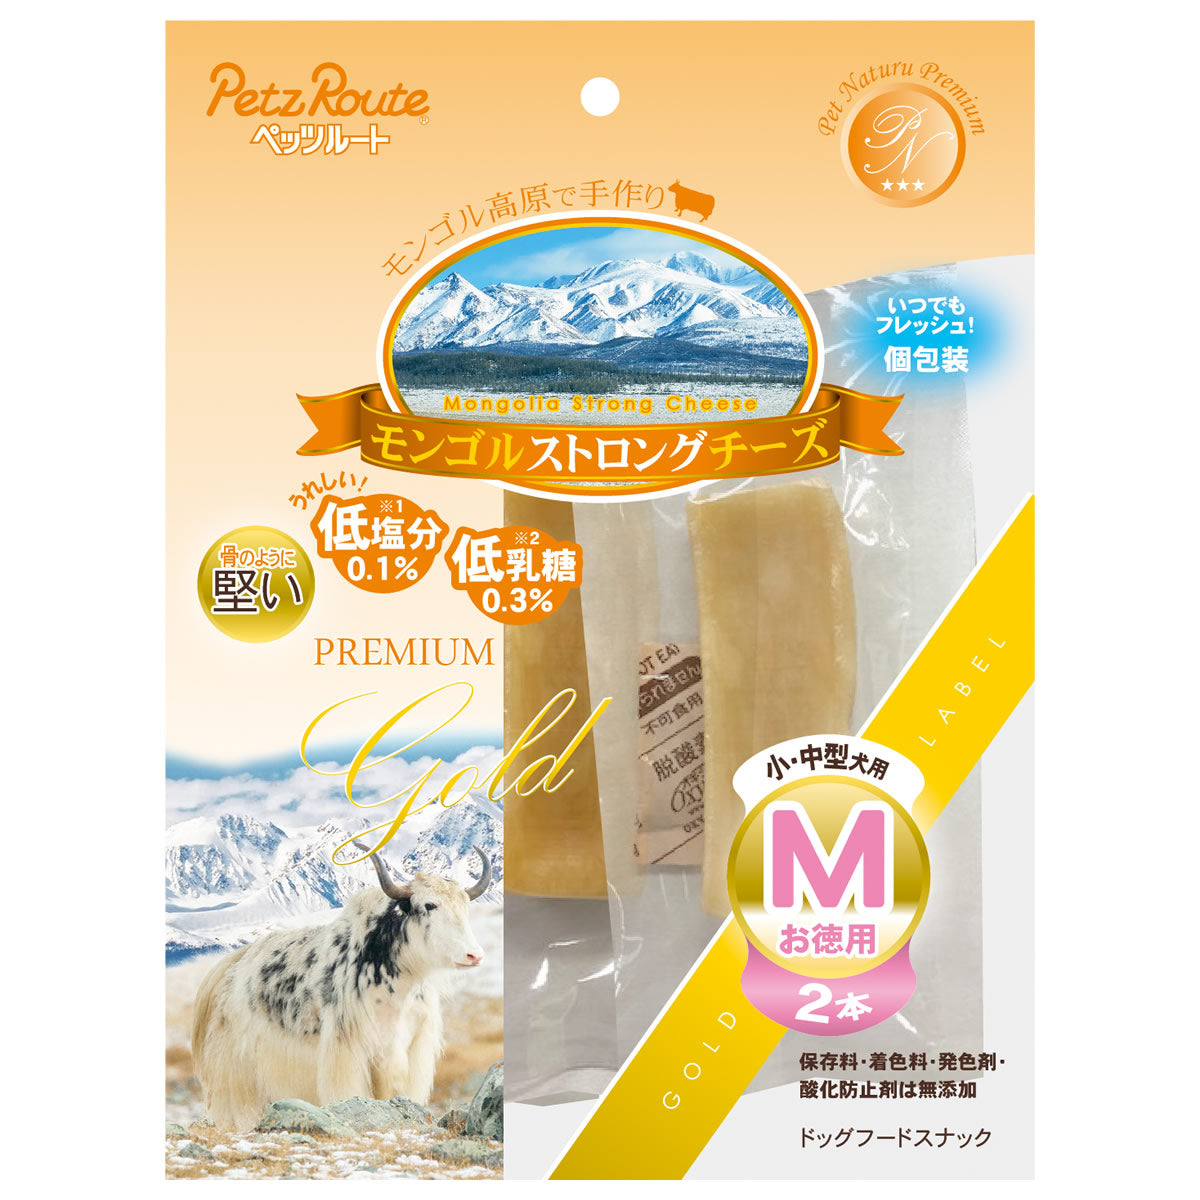 ペッツルート モンゴルストロングチーズ お徳用 小・中型犬用 M 2本